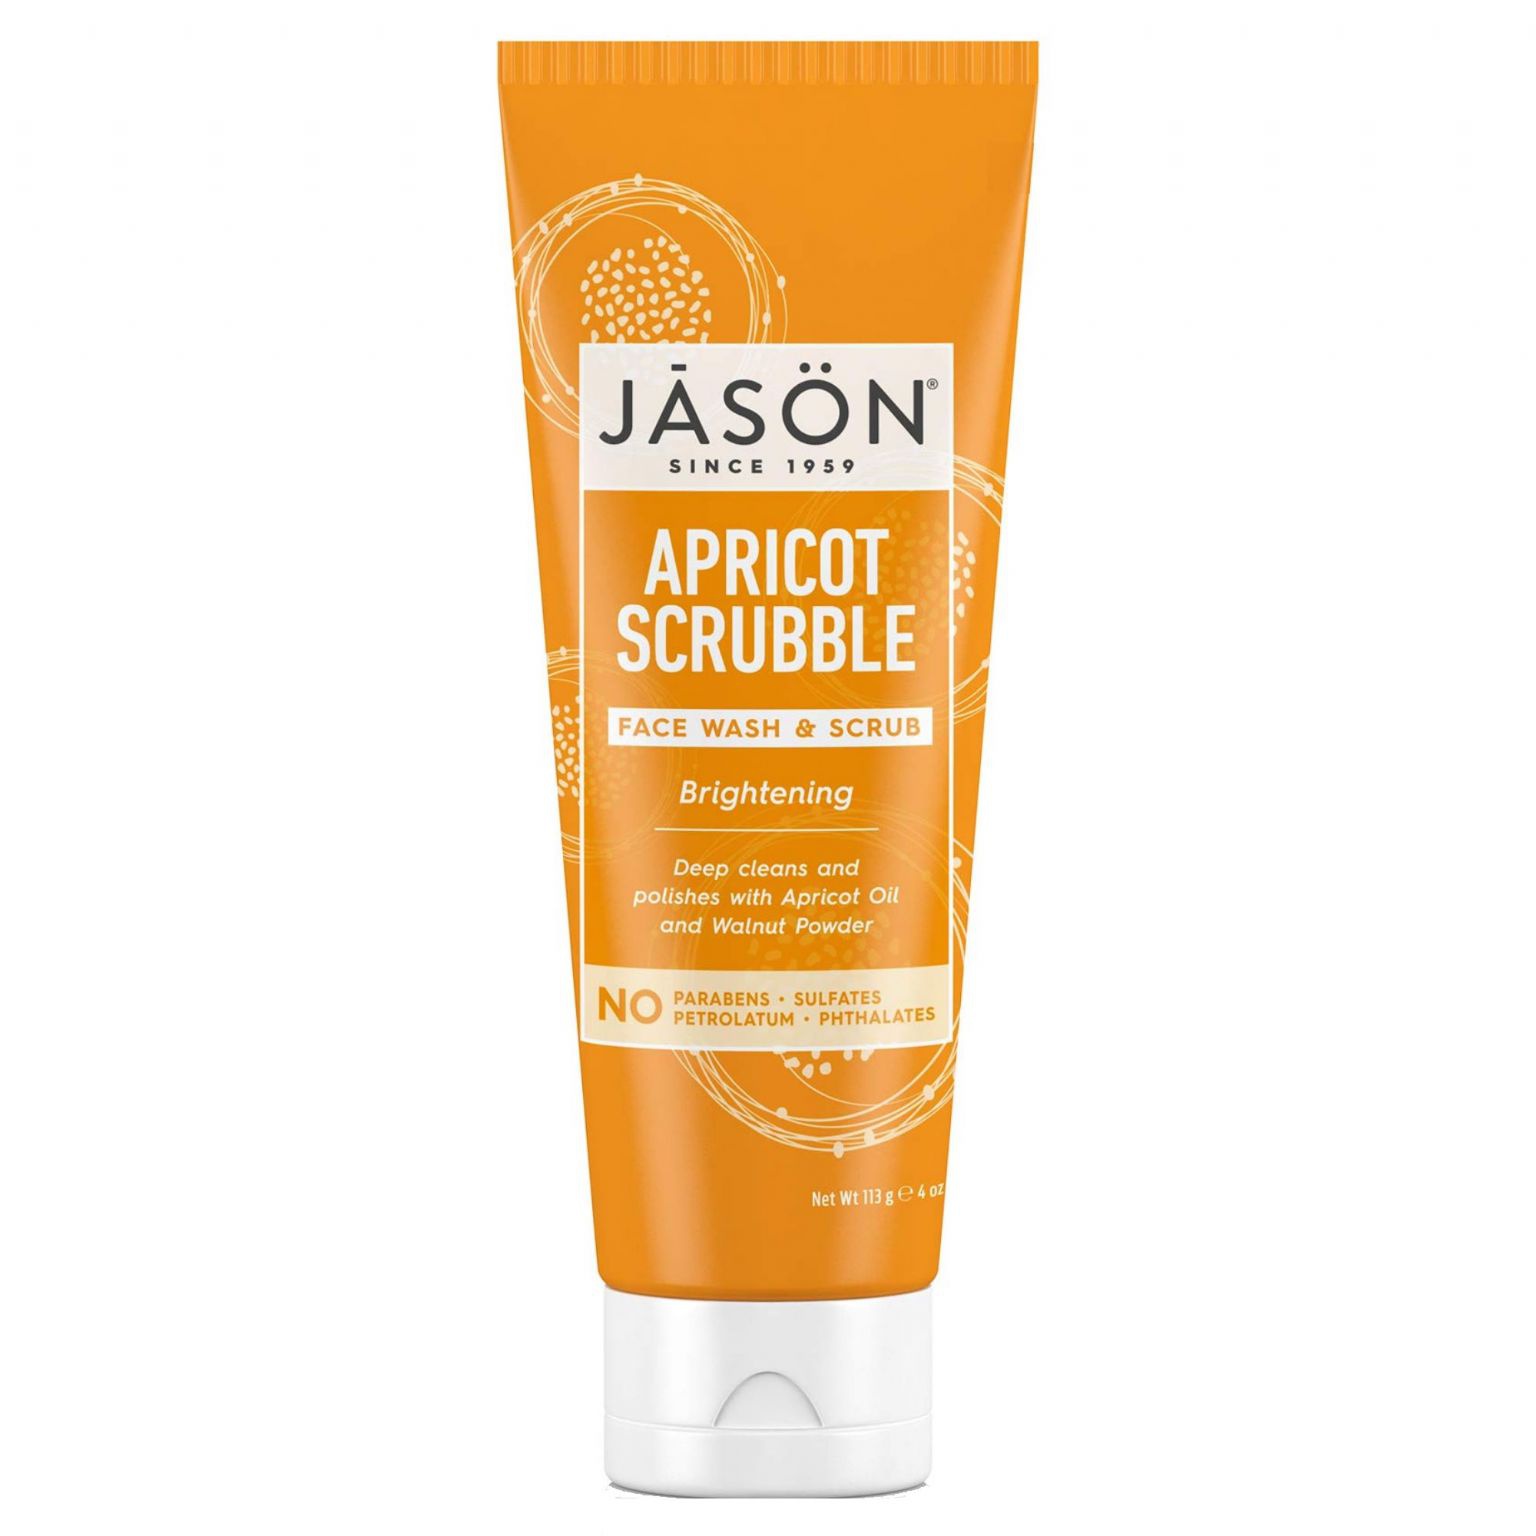 Jason Brightening Apricot Scrubble Face Wash & Scrub